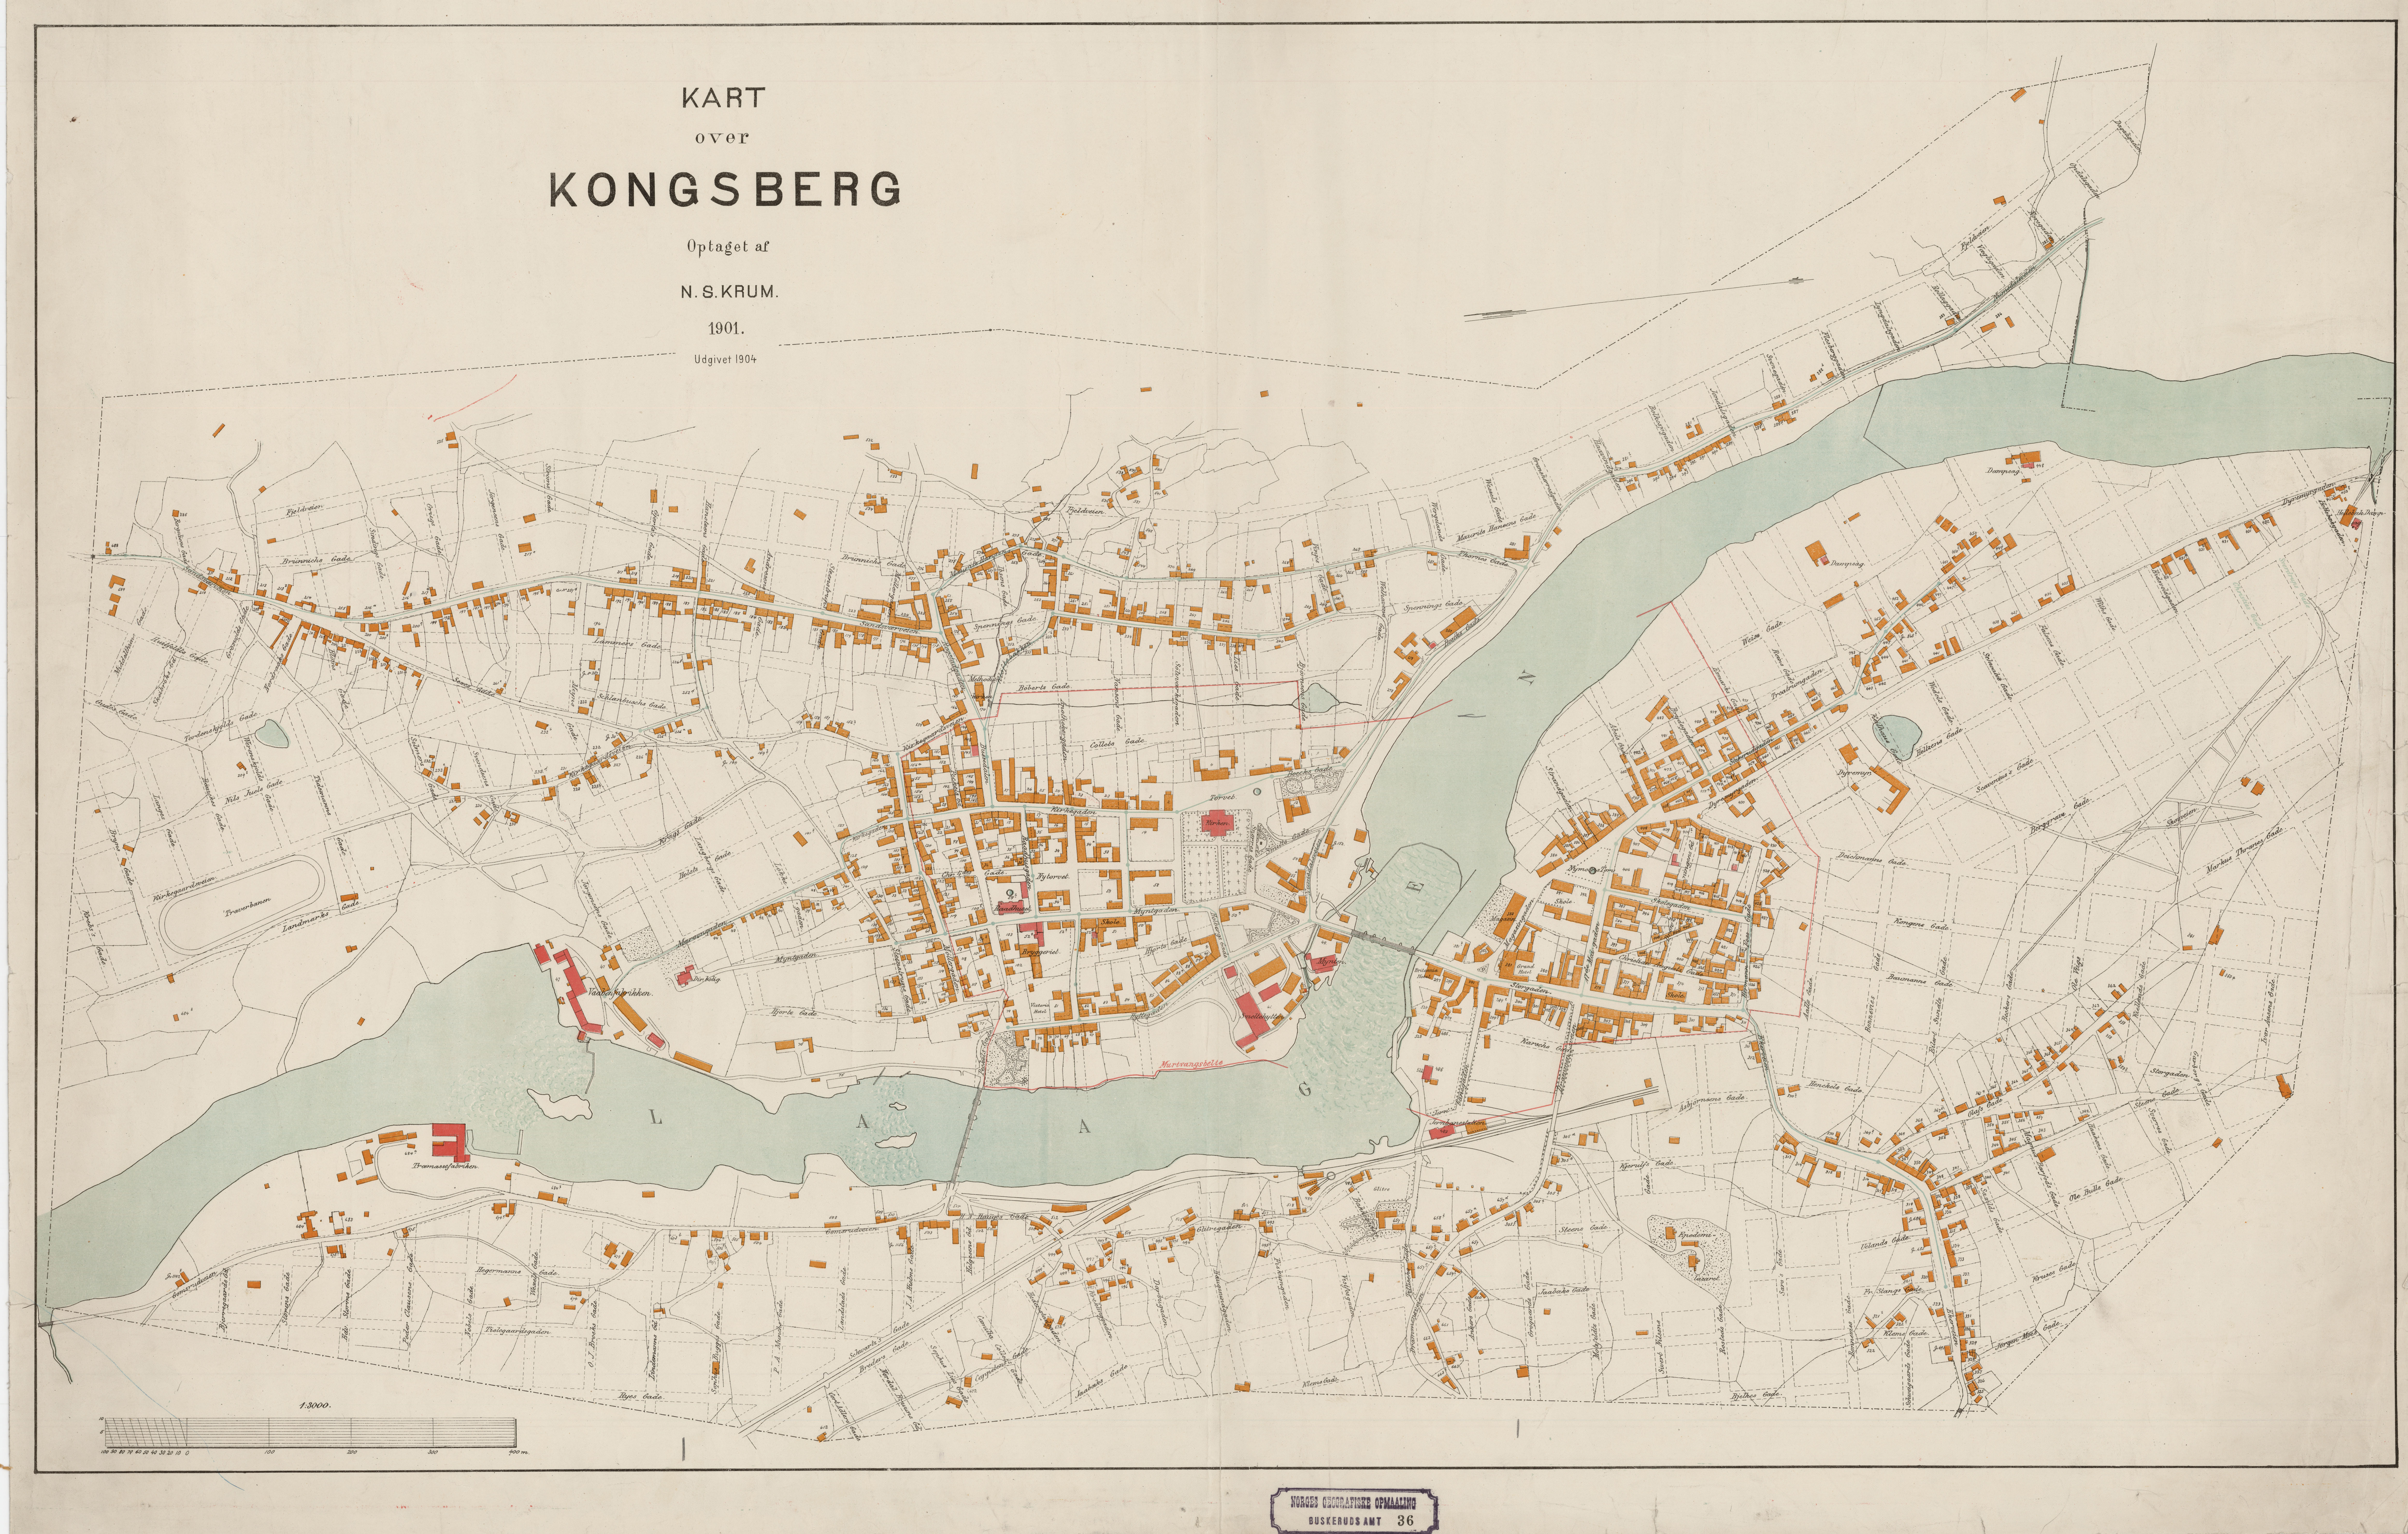 kart over kongsberg File Buskerud Amt Nr 36 Kart Over Kongsberg 1901 Jpg Wikimedia Commons kart over kongsberg